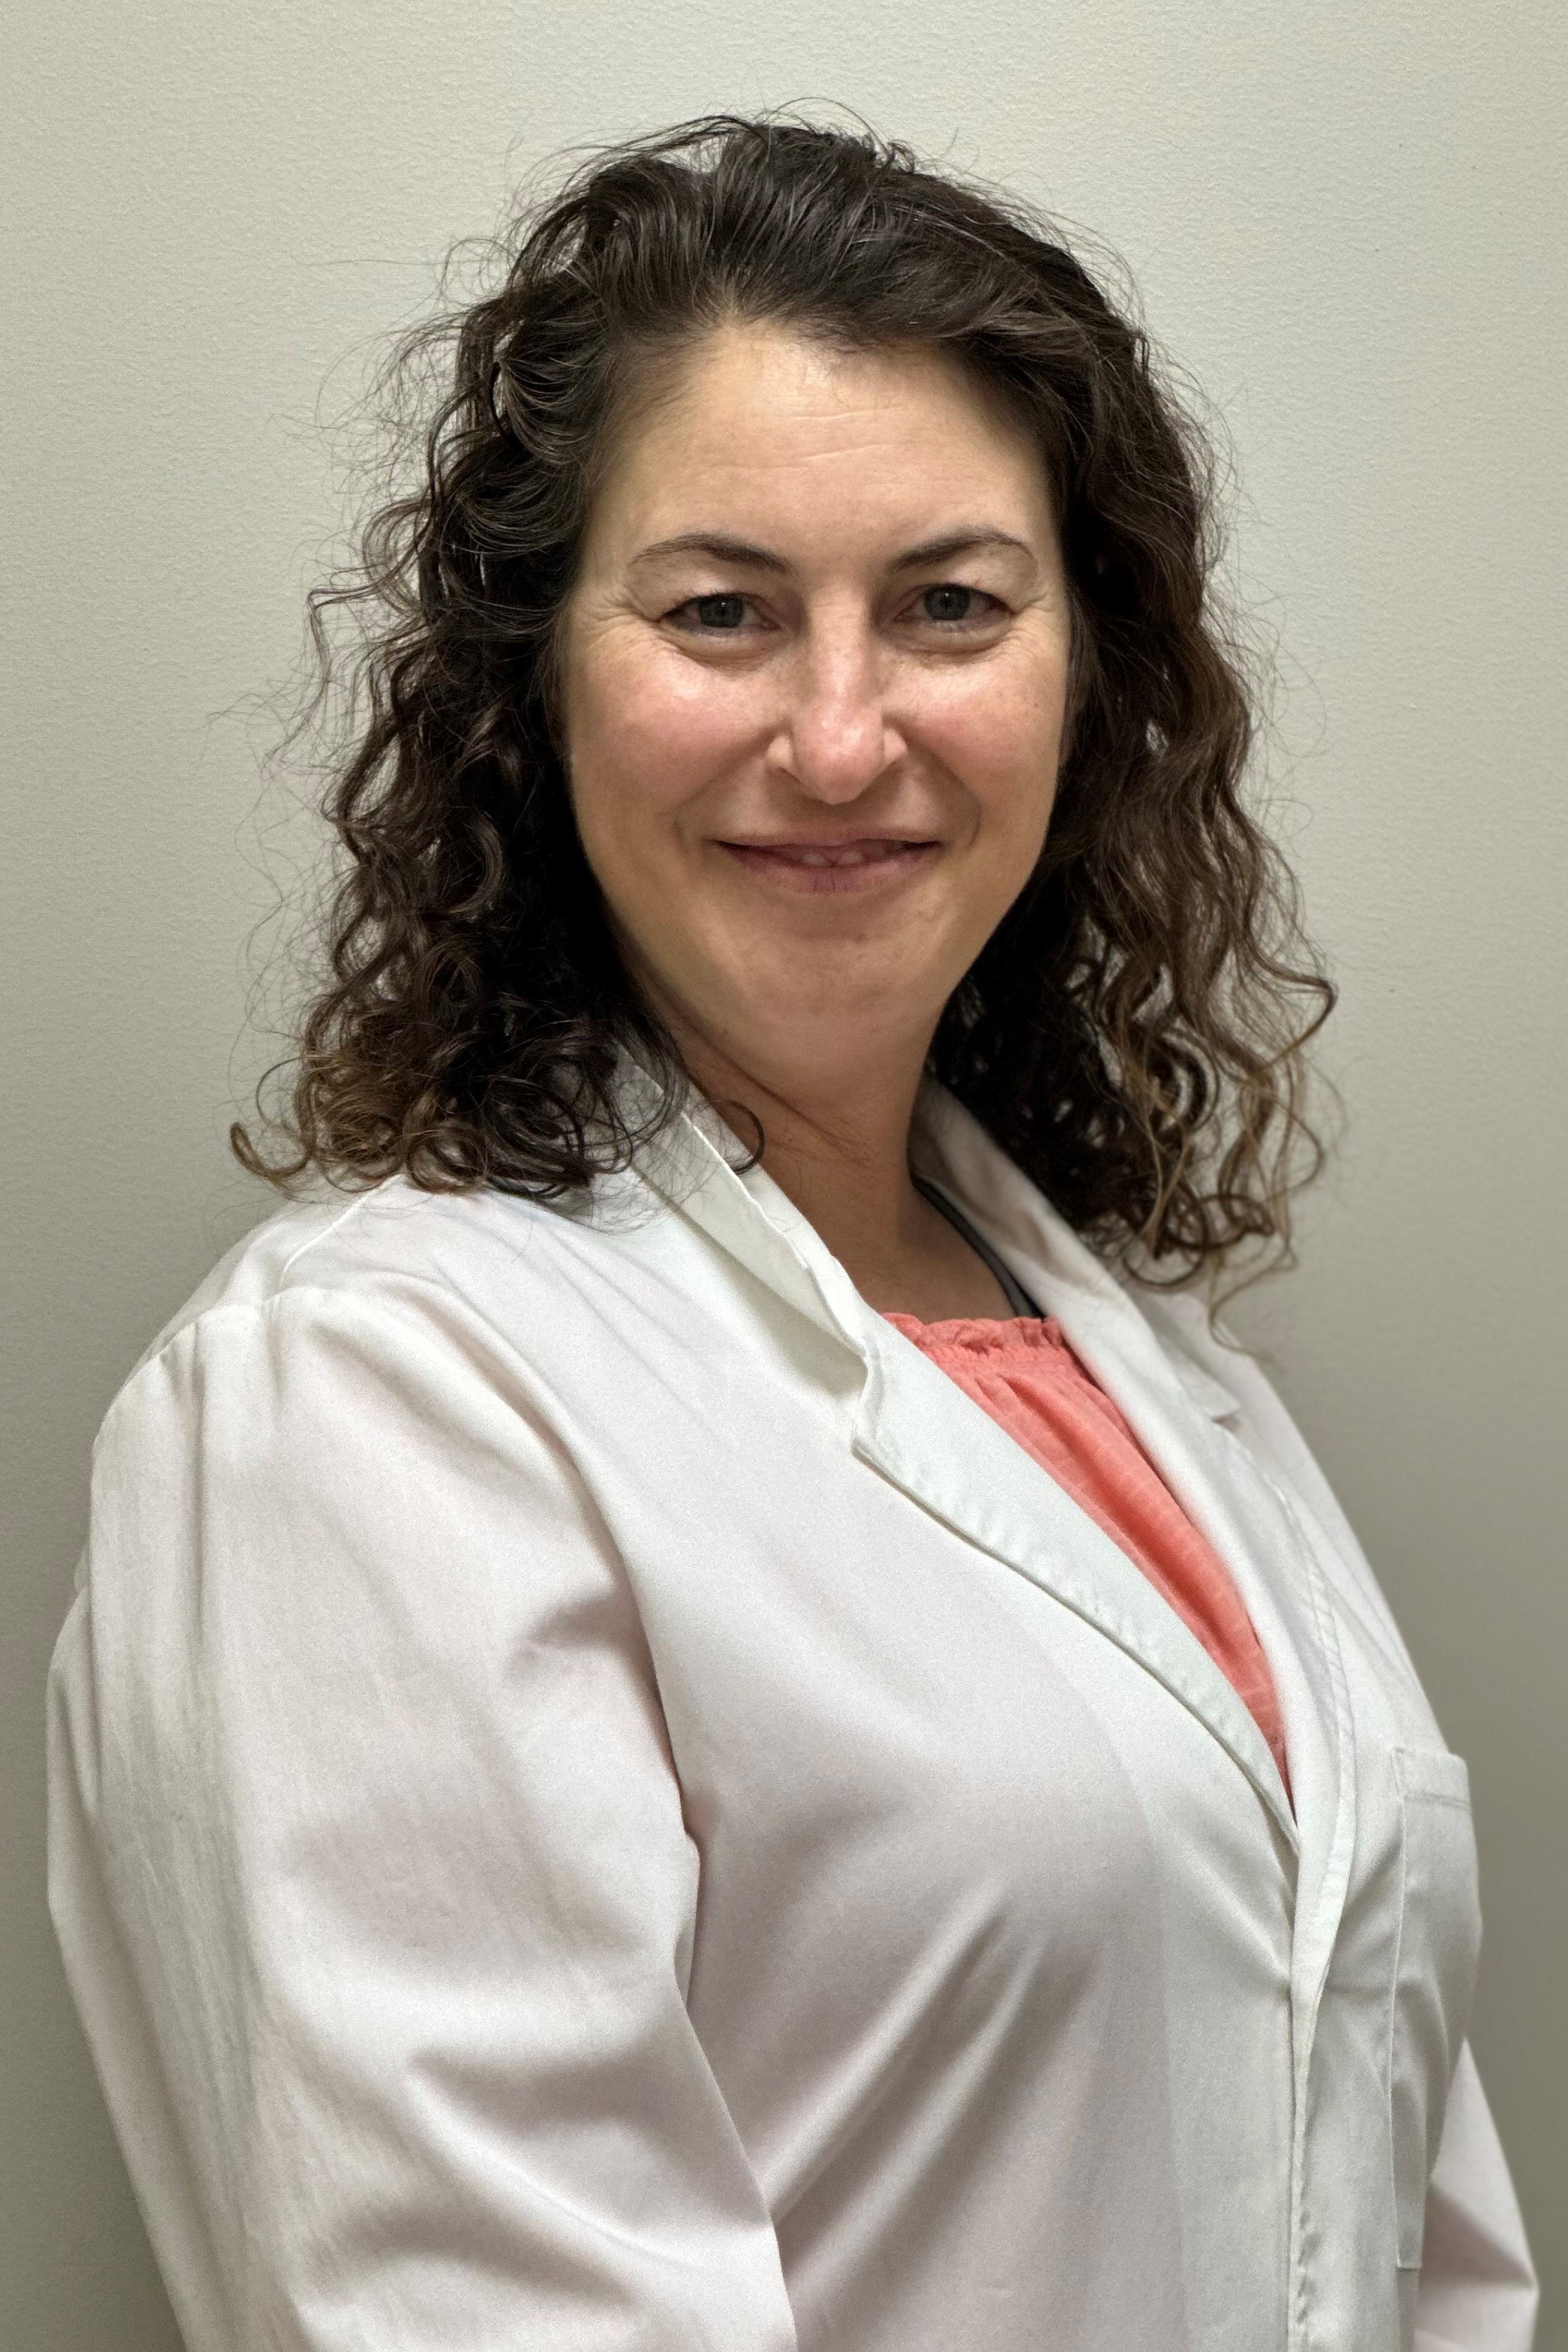 Dr. Suzanne Gharib